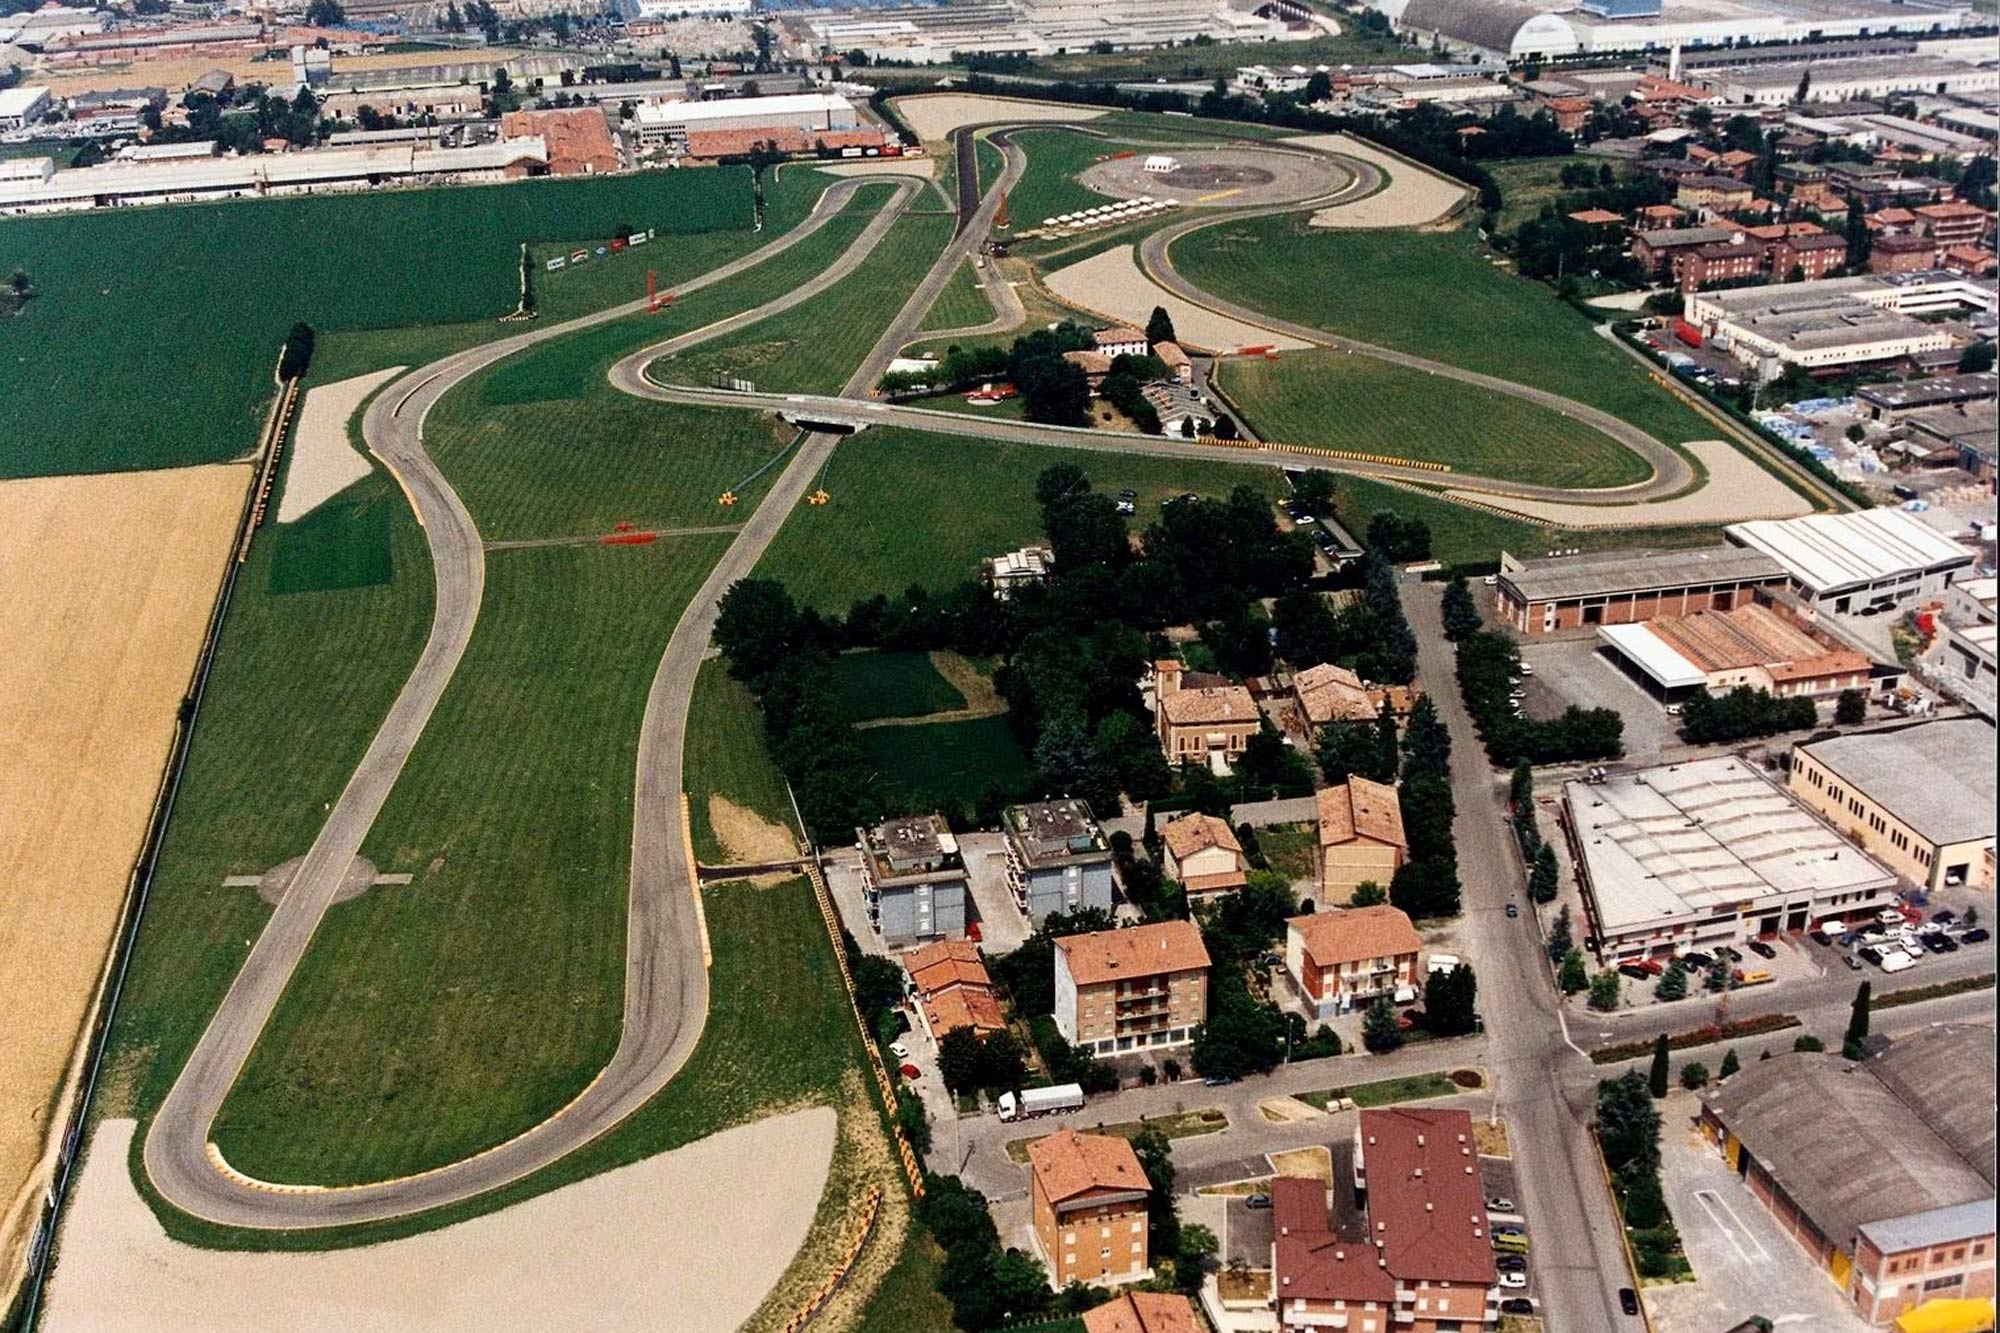 The Ferrari Fiorano track